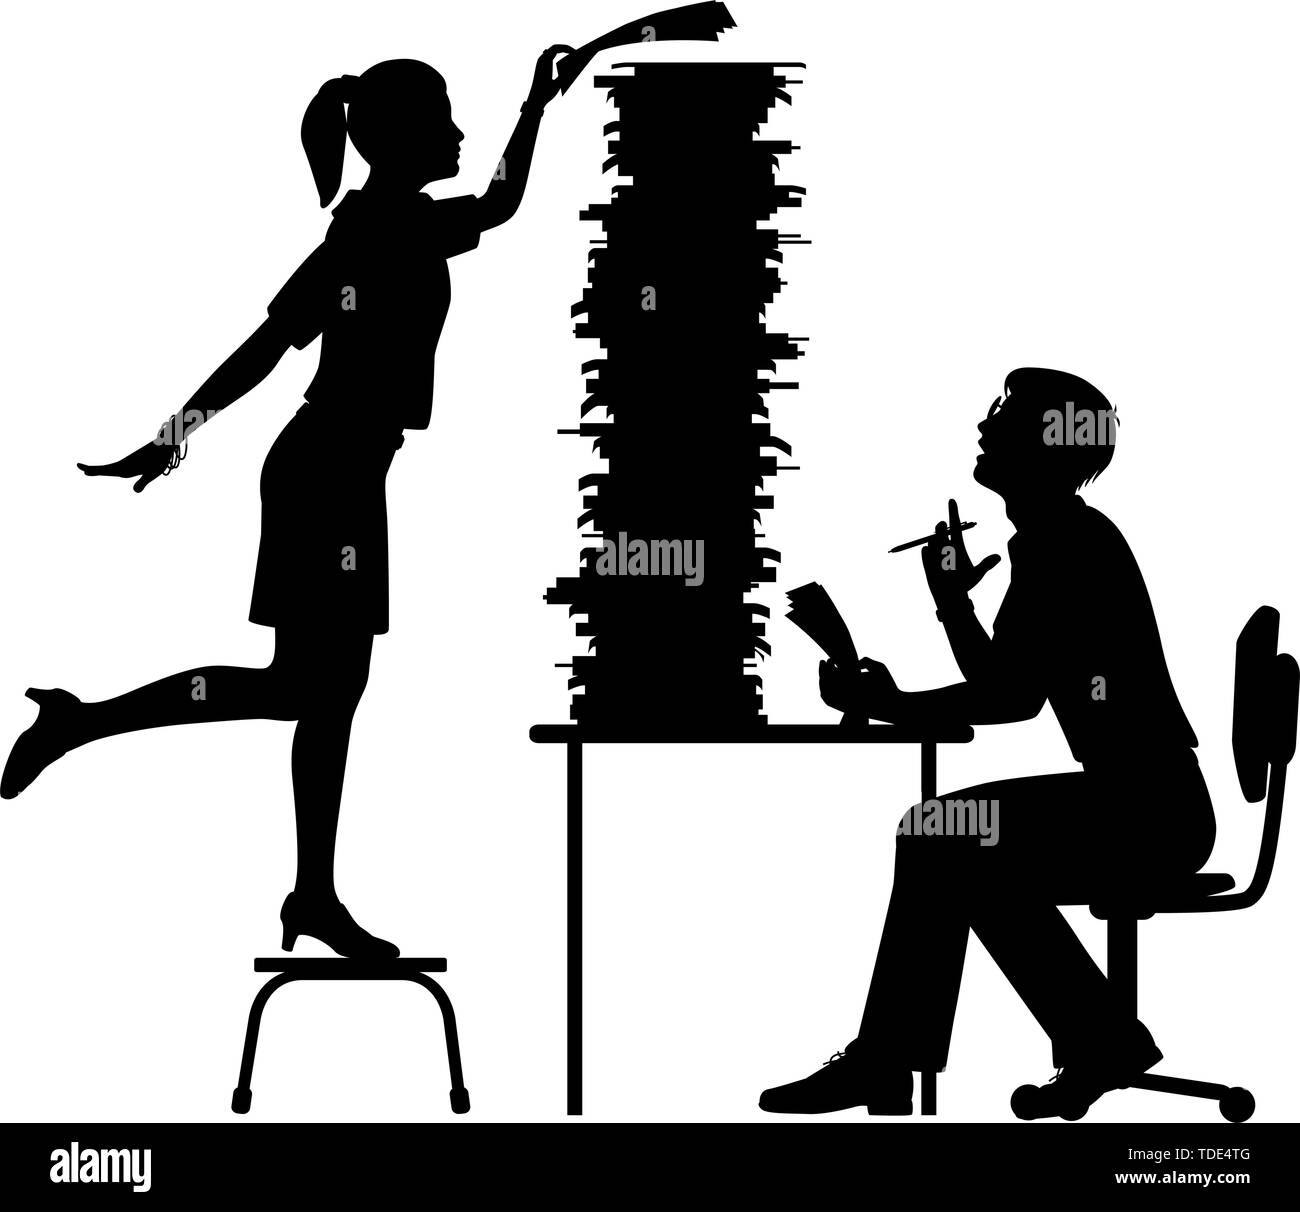 Vettore modificabile silhouette di una segretaria aggiunta al lavoro eccessivo cumulo di un lavoratore di ufficio con figure come oggetti separati Illustrazione Vettoriale